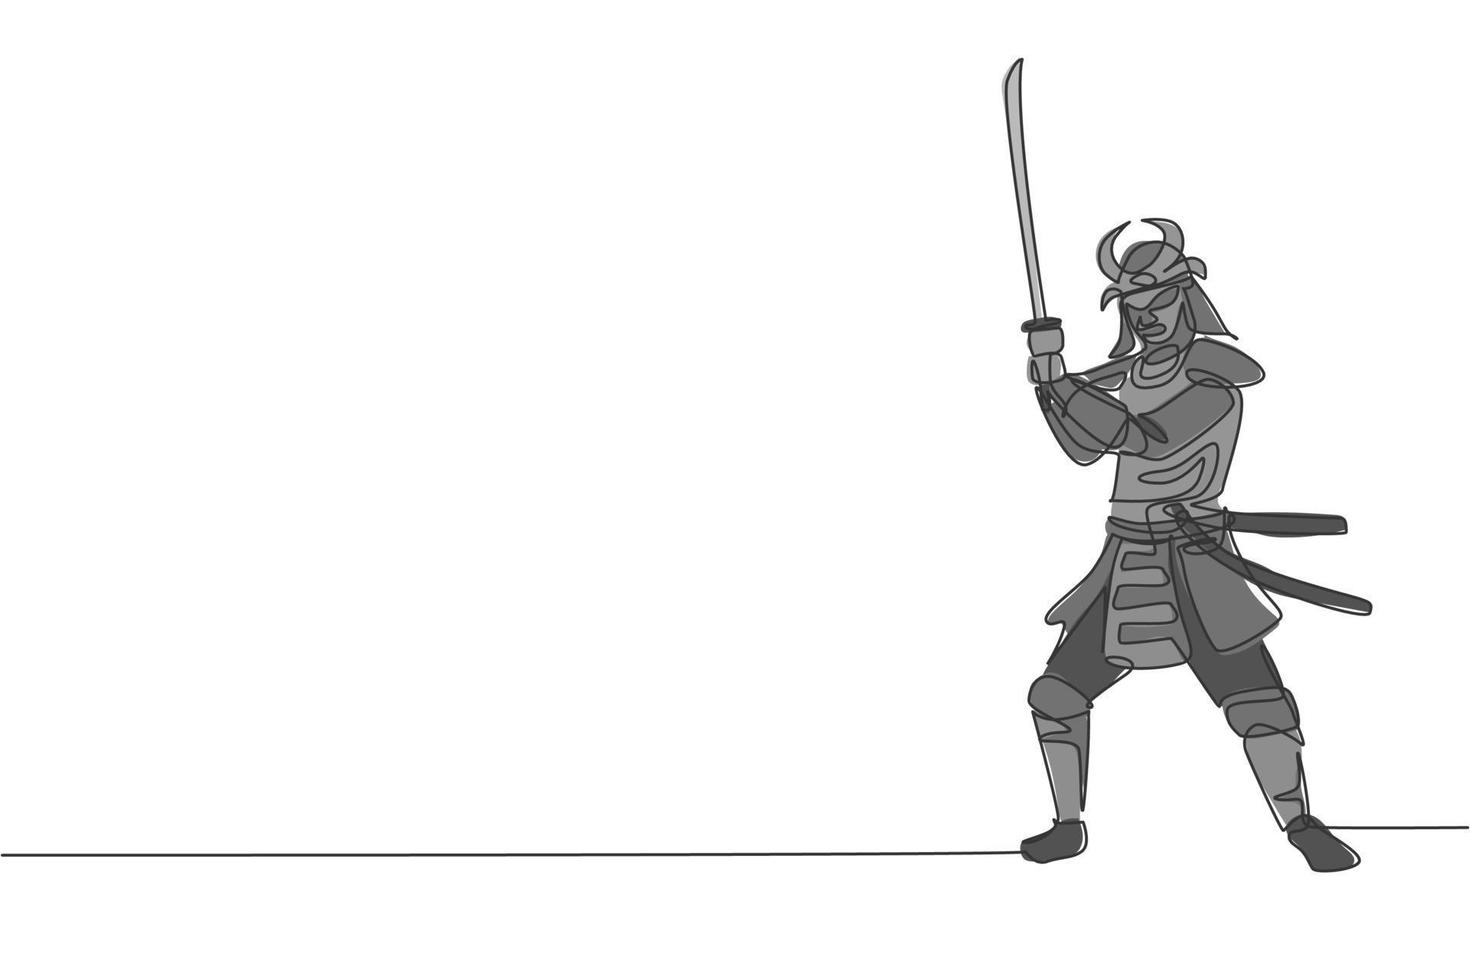 un dessin en ligne continu d'un jeune shogun samouraï de bravoure portant un masque prêt à attaquer lors d'une séance d'entraînement. concept de sport de combat d'art martial. illustration vectorielle de dessin dynamique à une seule ligne vecteur